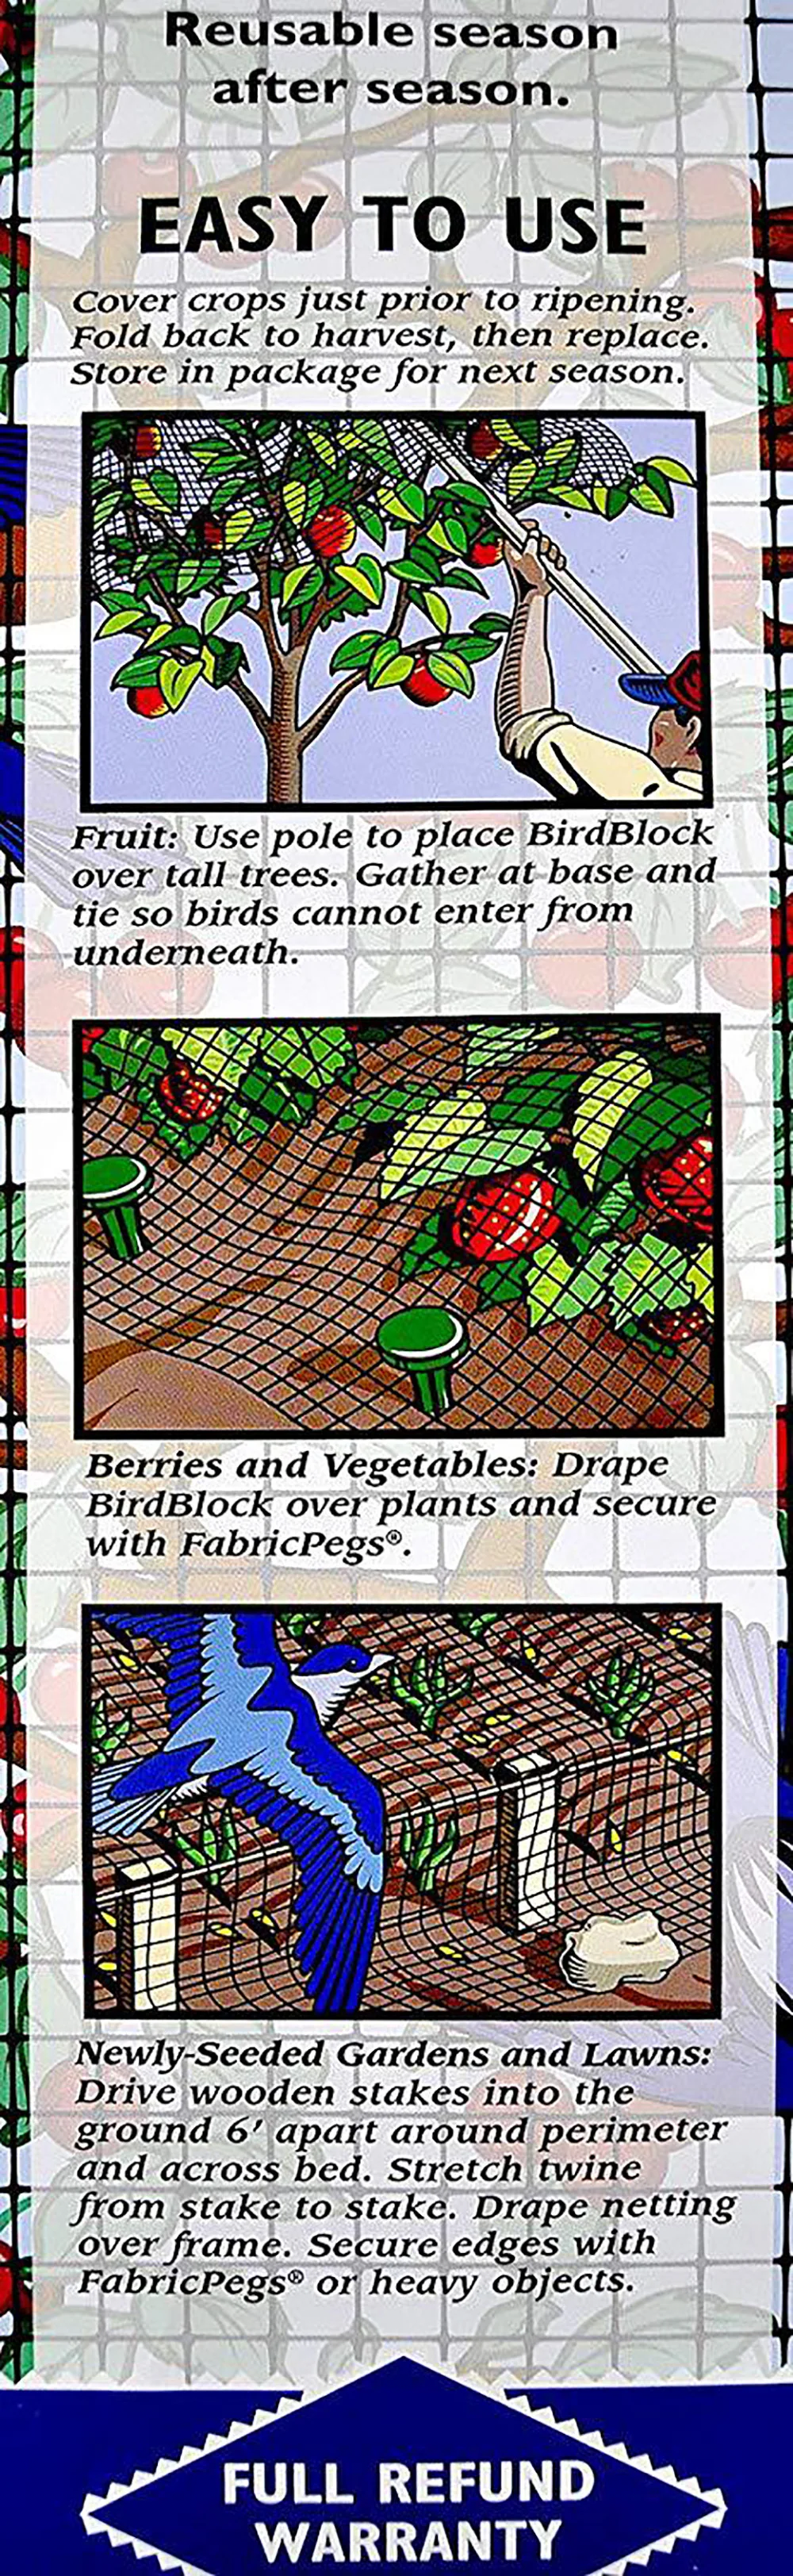 2 шт., садовая птичья сетка для борьбы с вредителями, анти птичья сетка с 20/50 галстуками, фруктовое дерево, овощи, защита садовой сетки